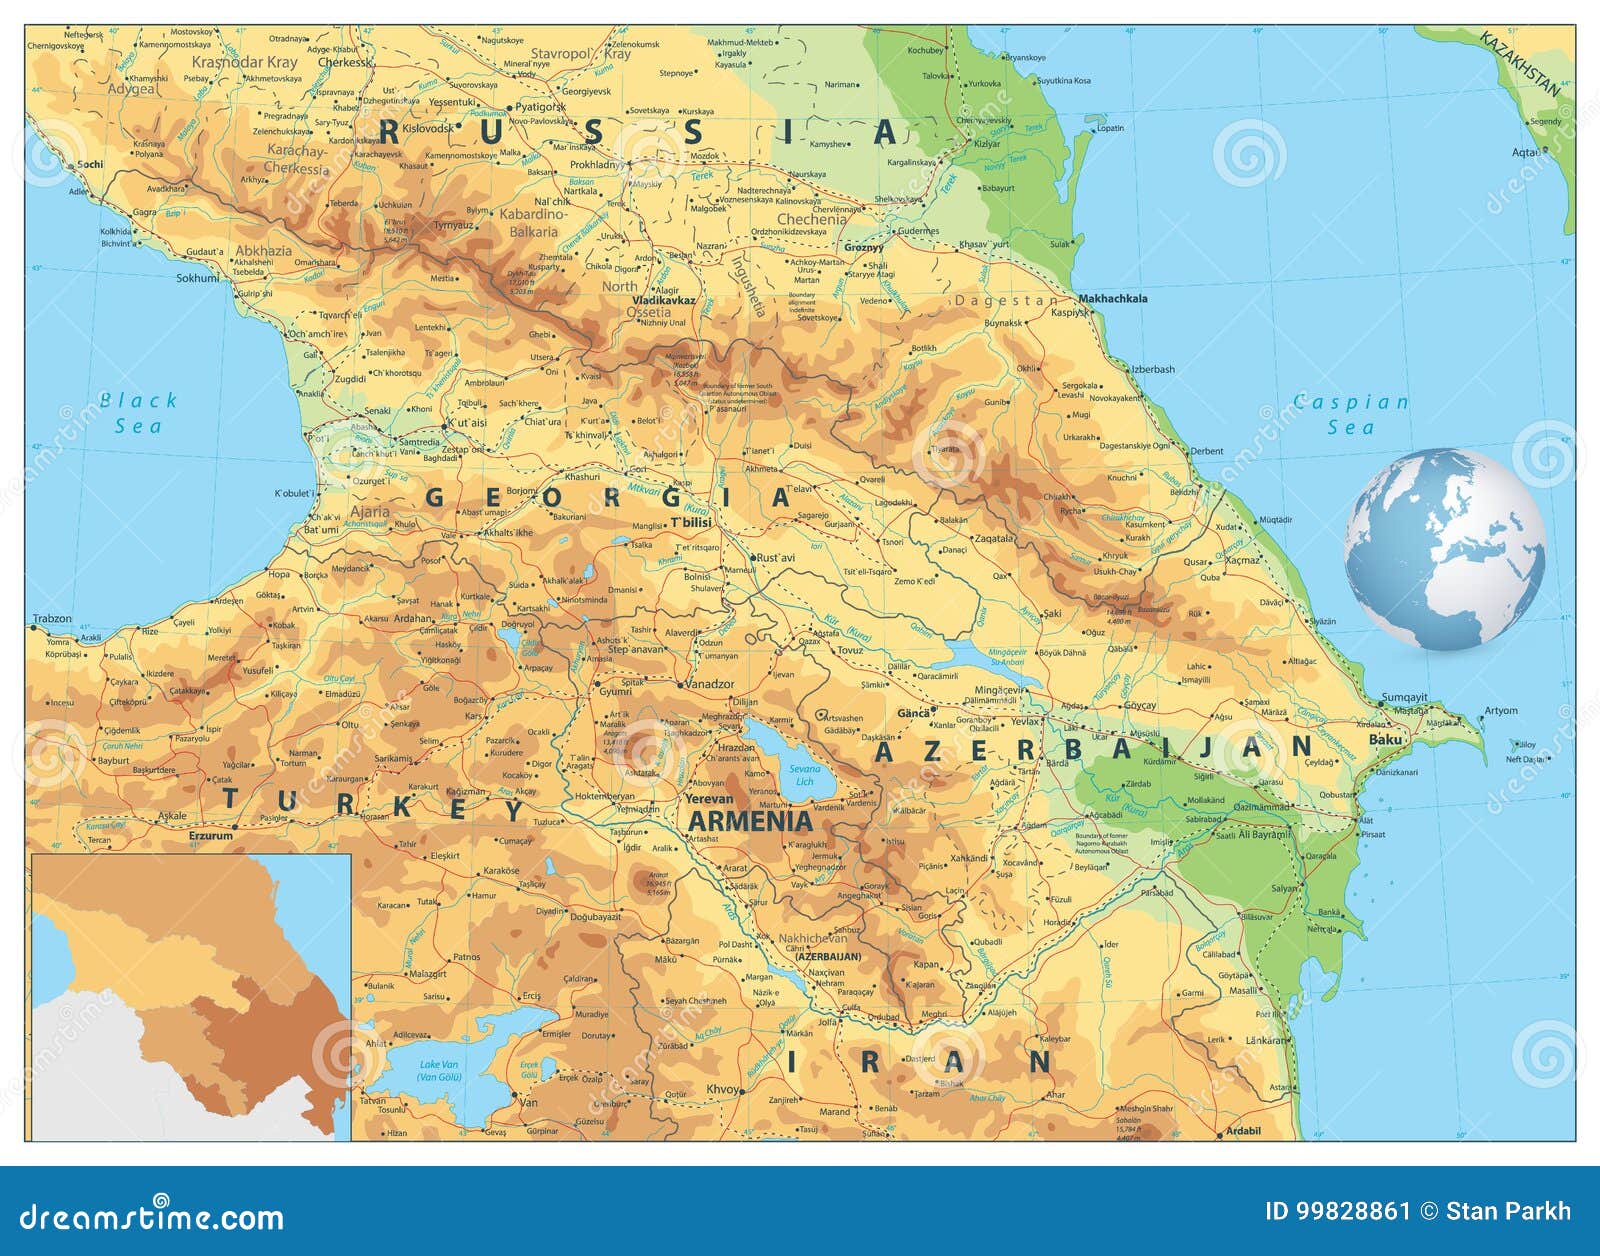 caucasus physical map